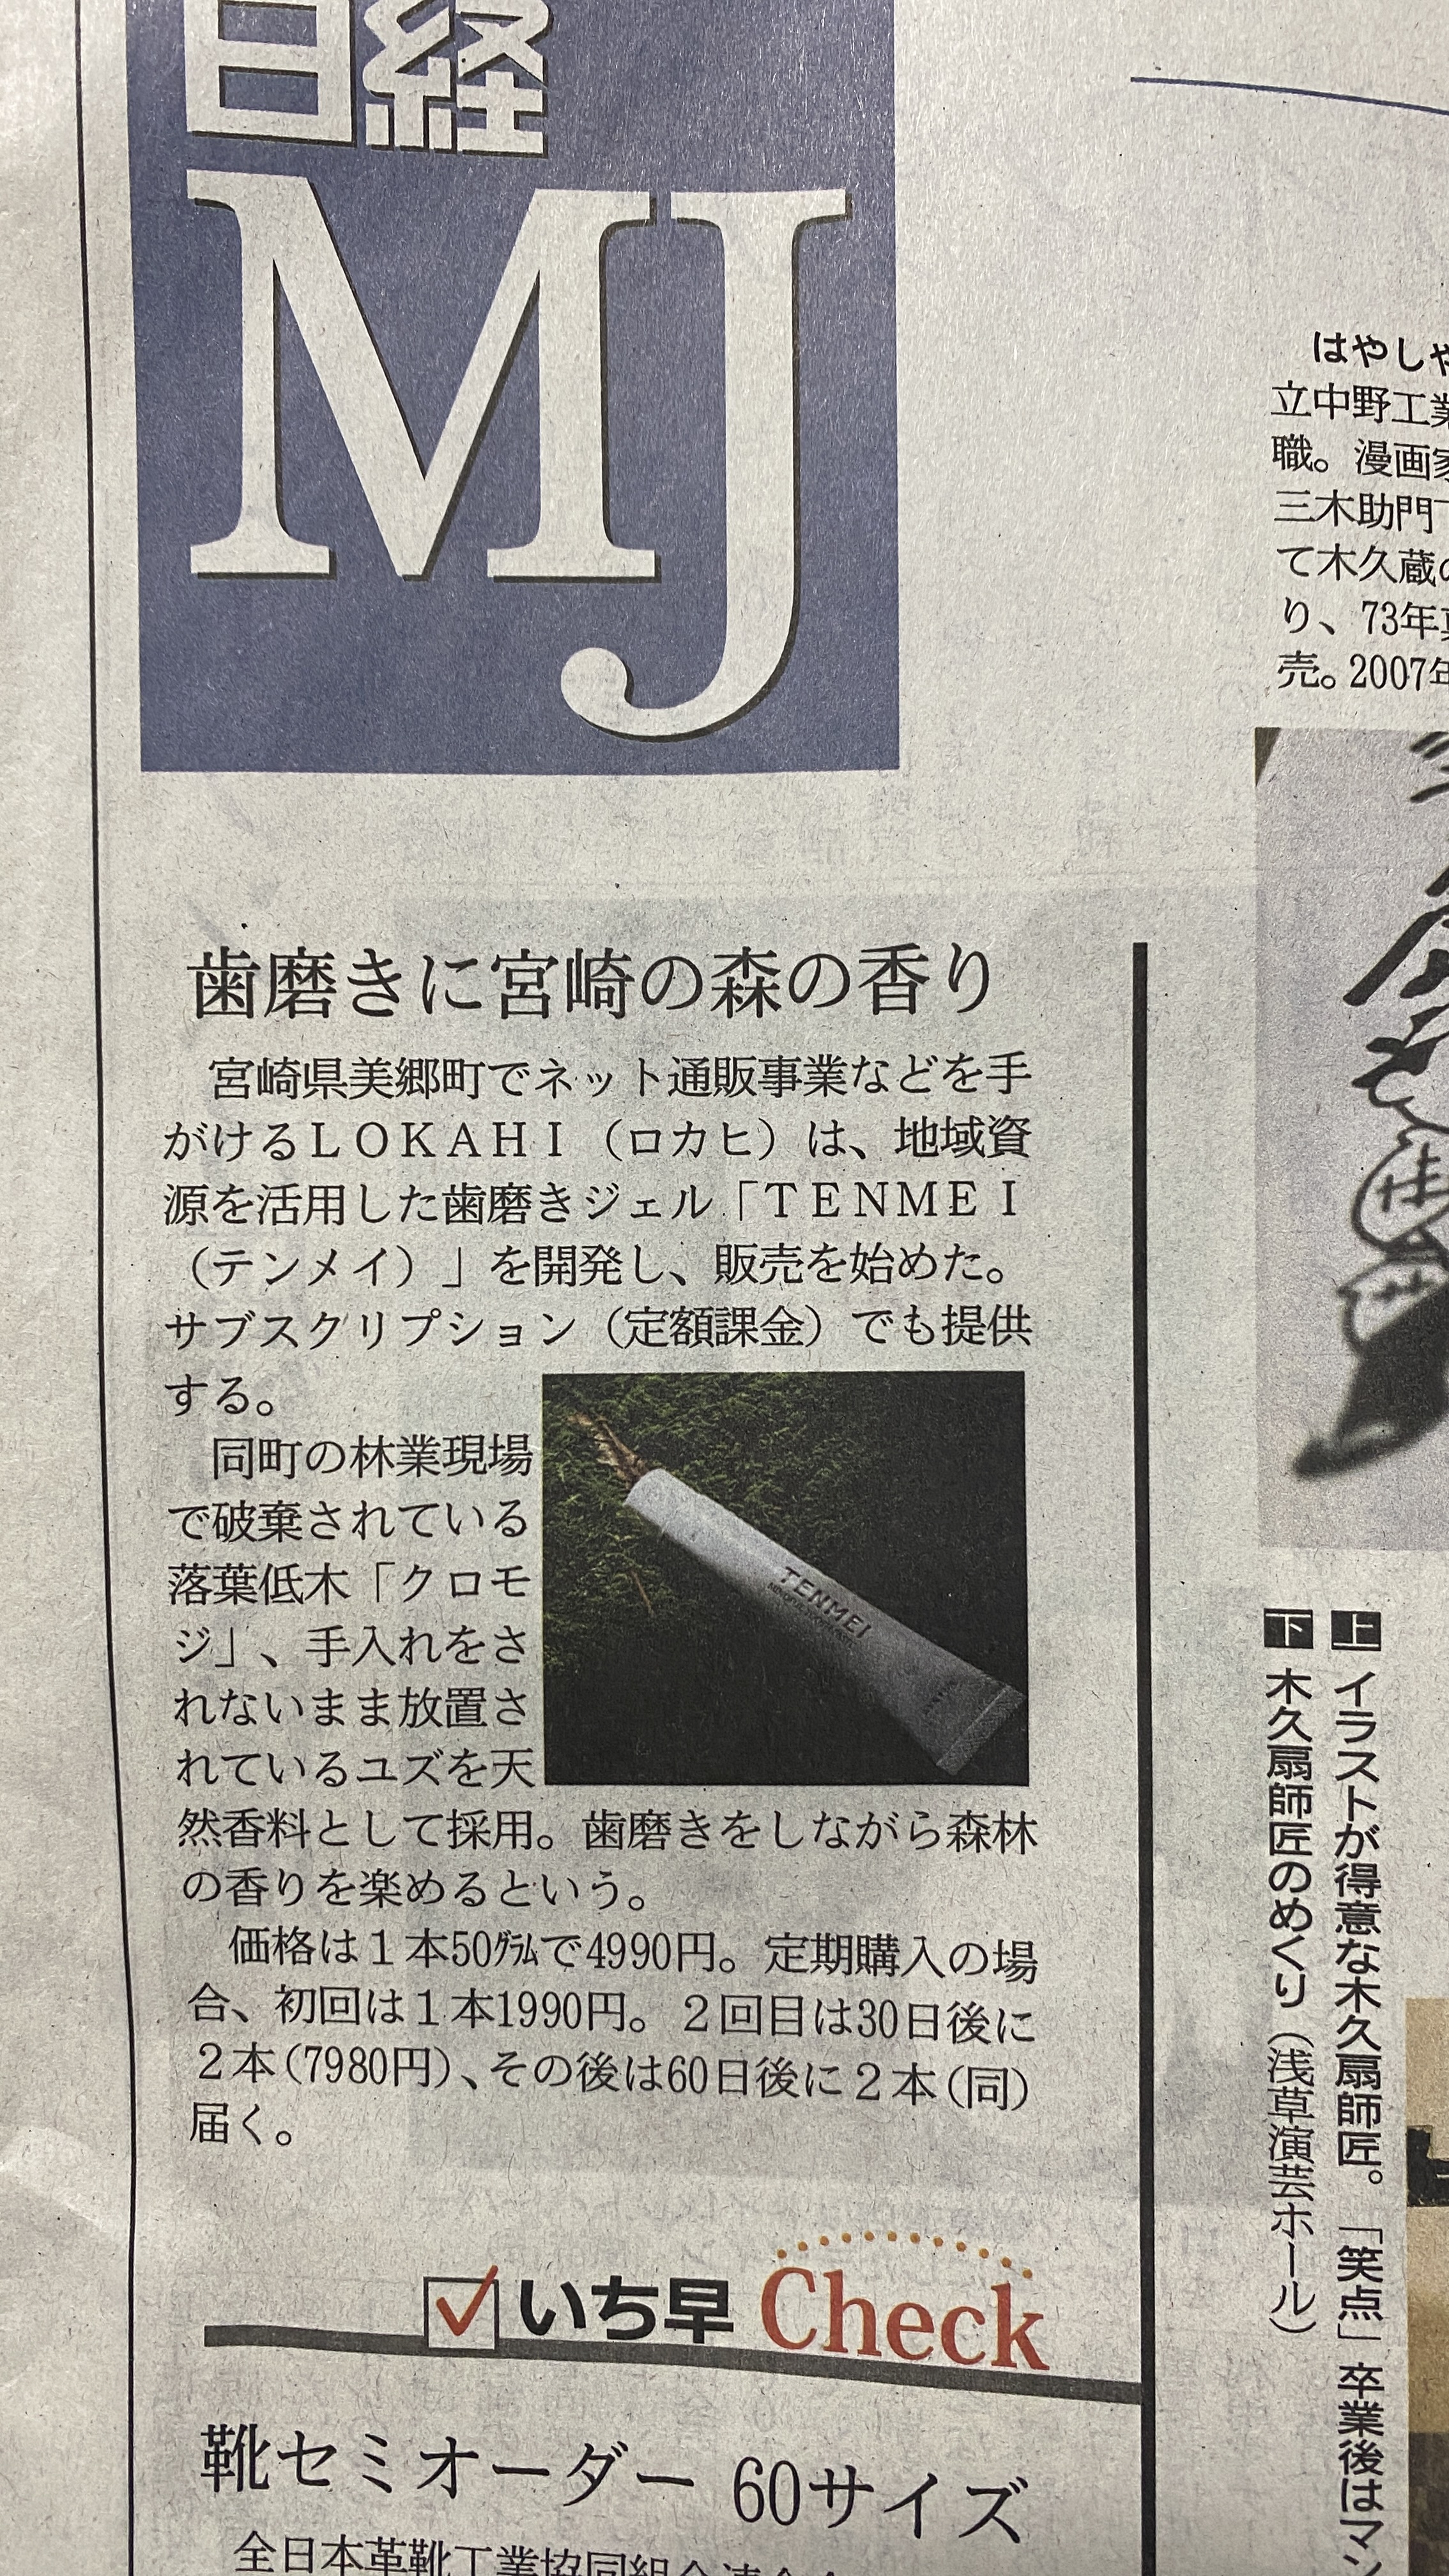 新聞「日経MJ」にて、TENMEIの取り組みが掲載されました。